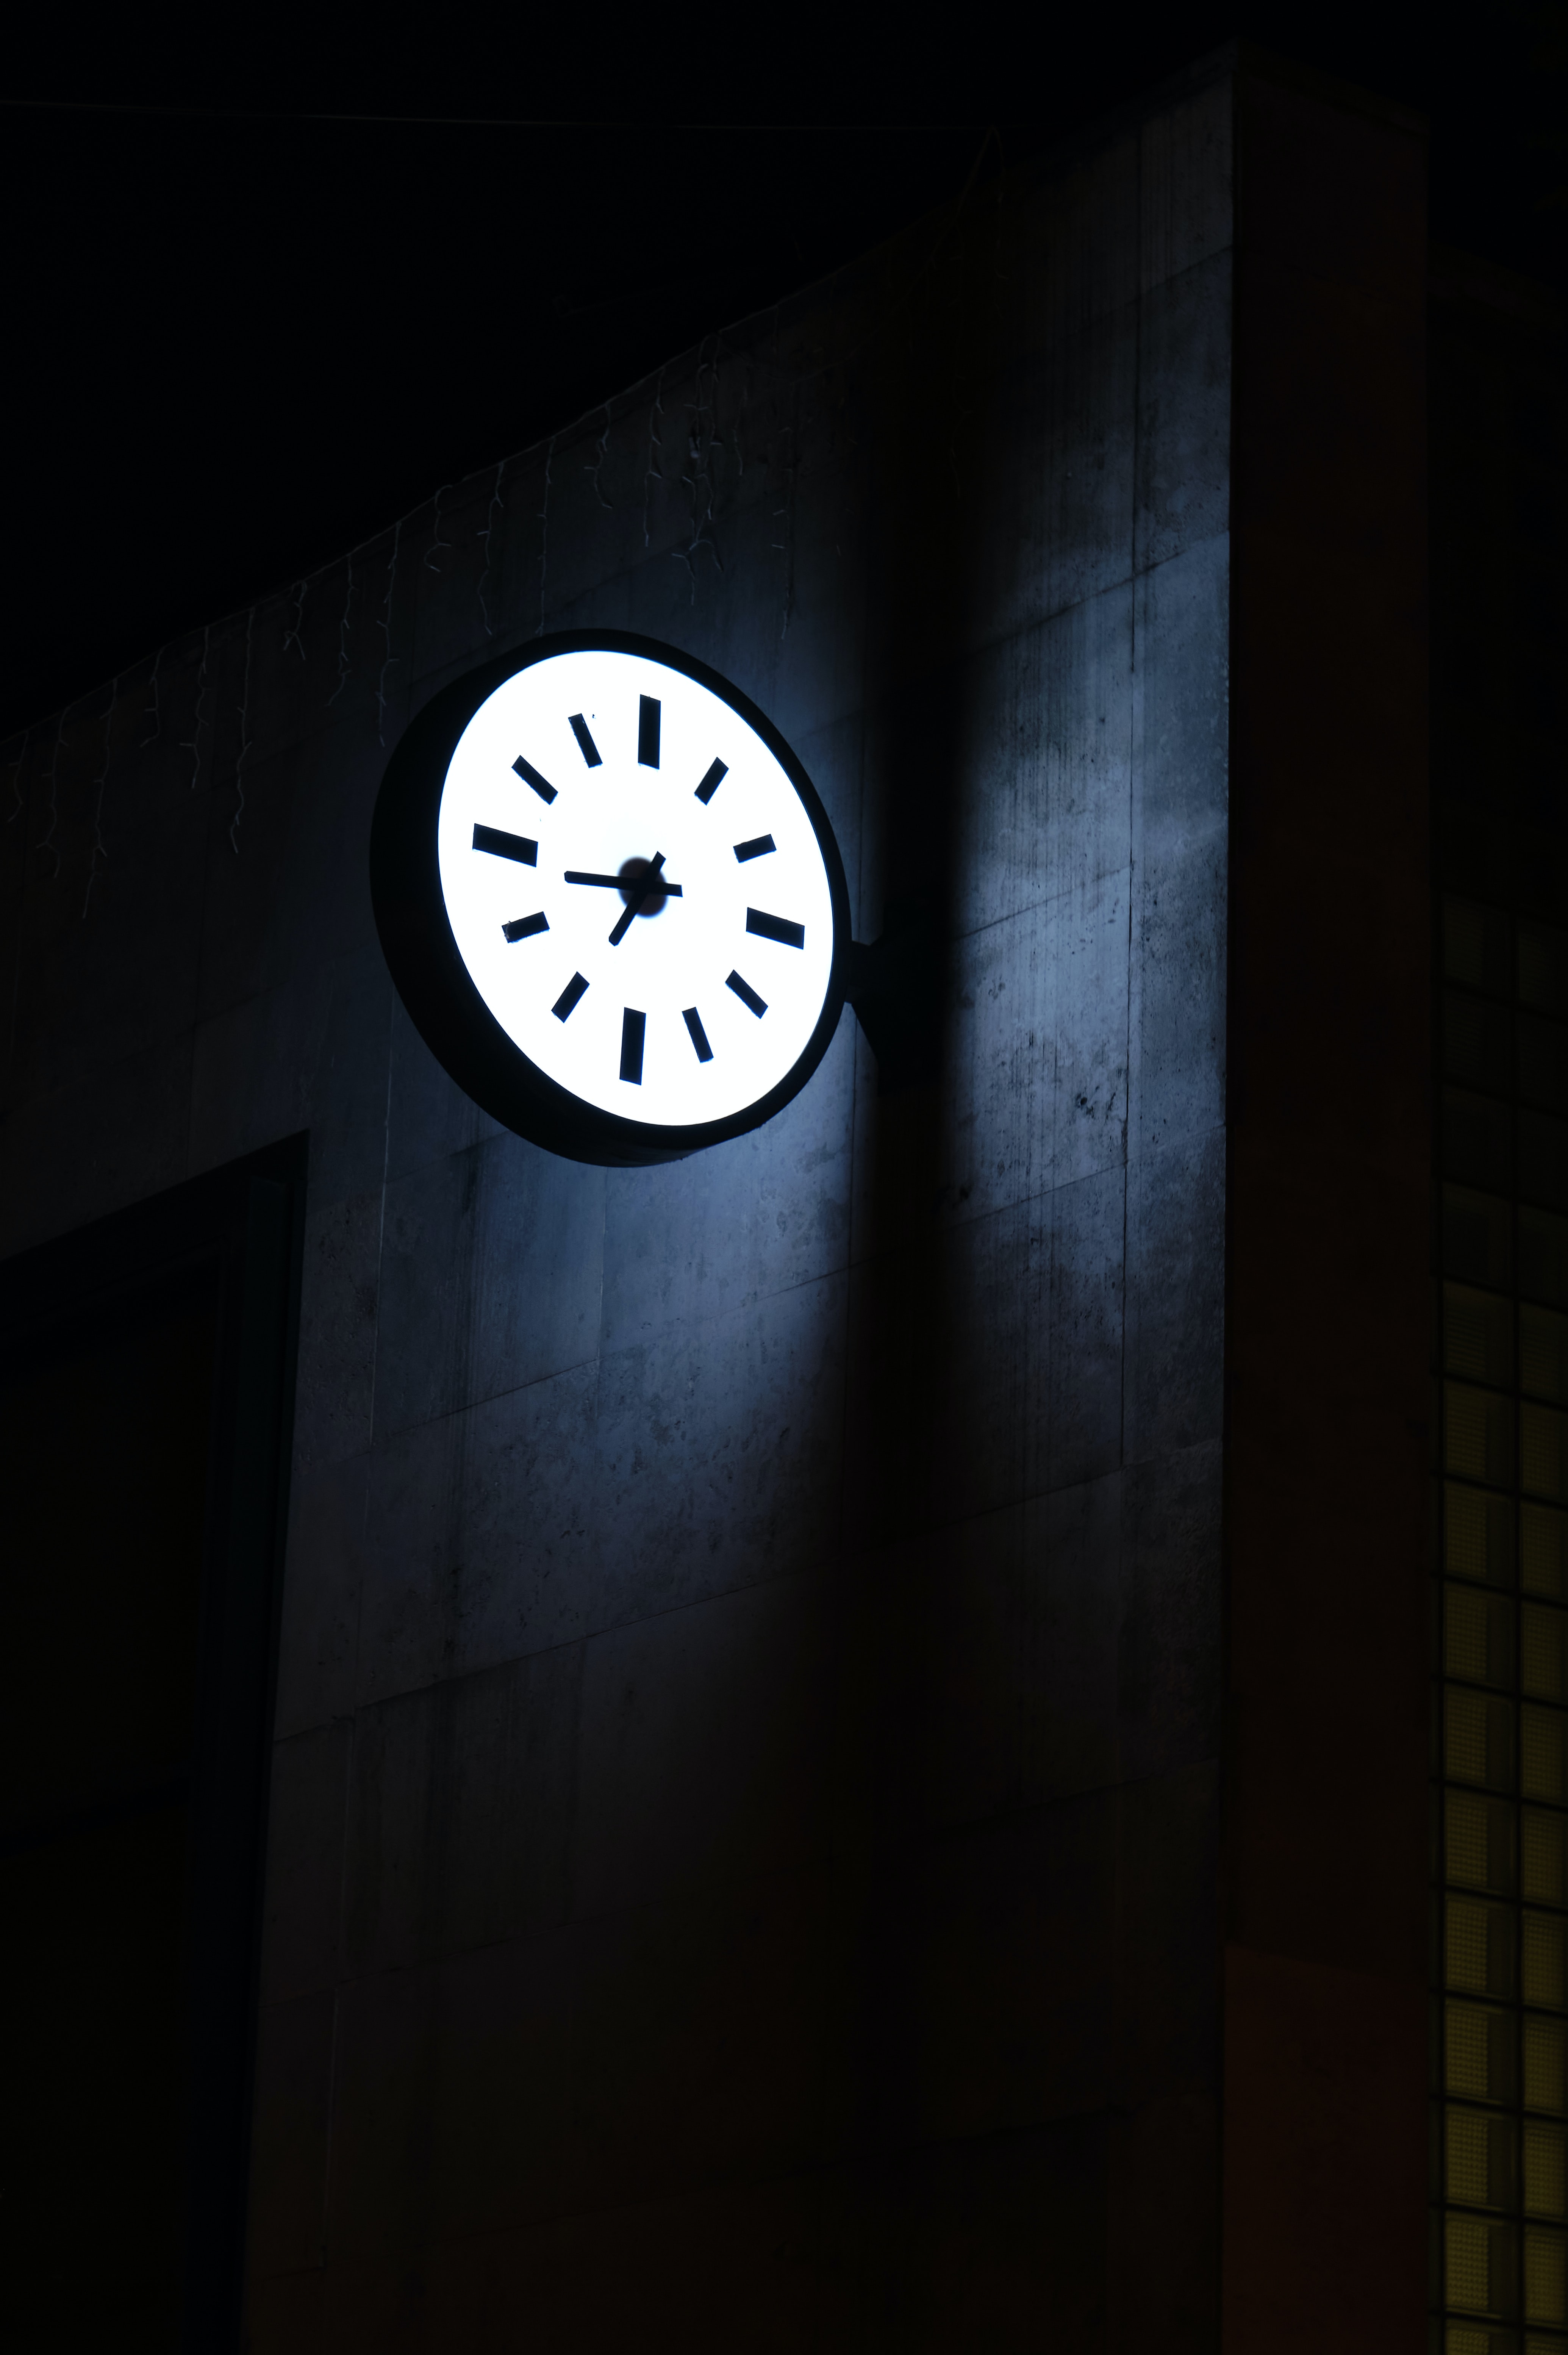 illumination, clock, building, dark, backlight, clock face, dial